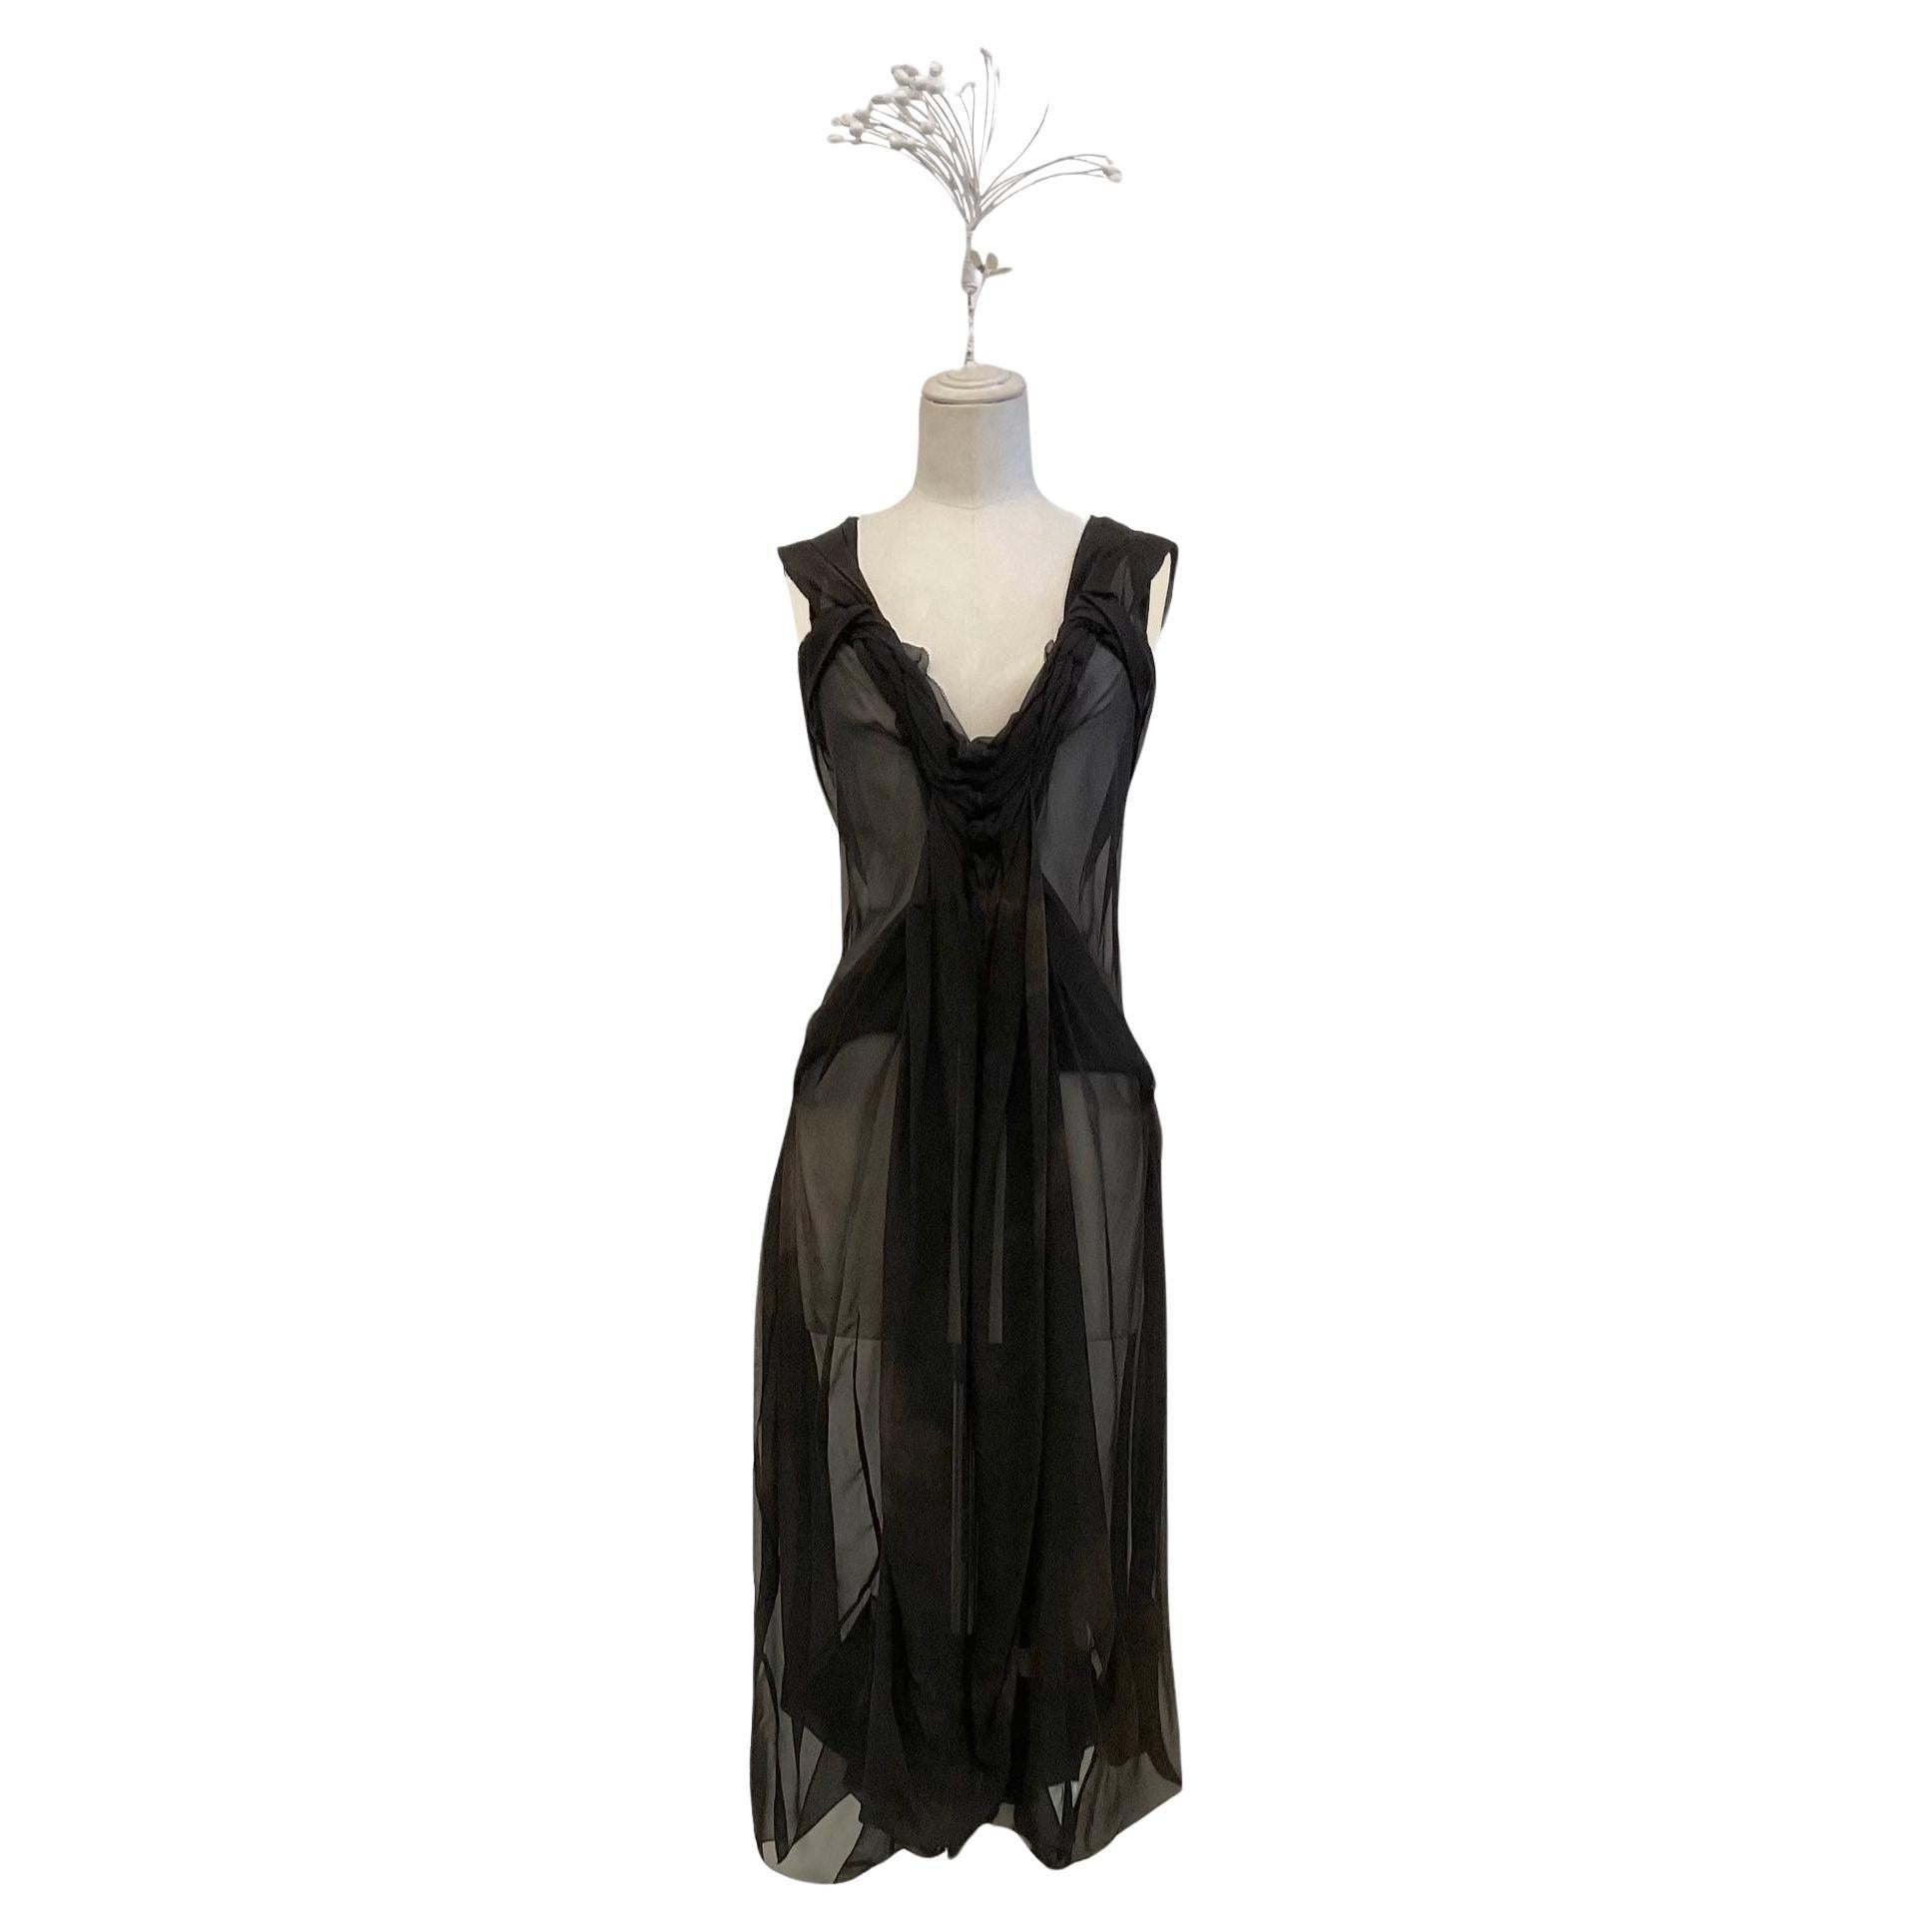 JOHN GALLIANO "Torsion" midi dress in dark brown silk georgette fw 2006 For Sale